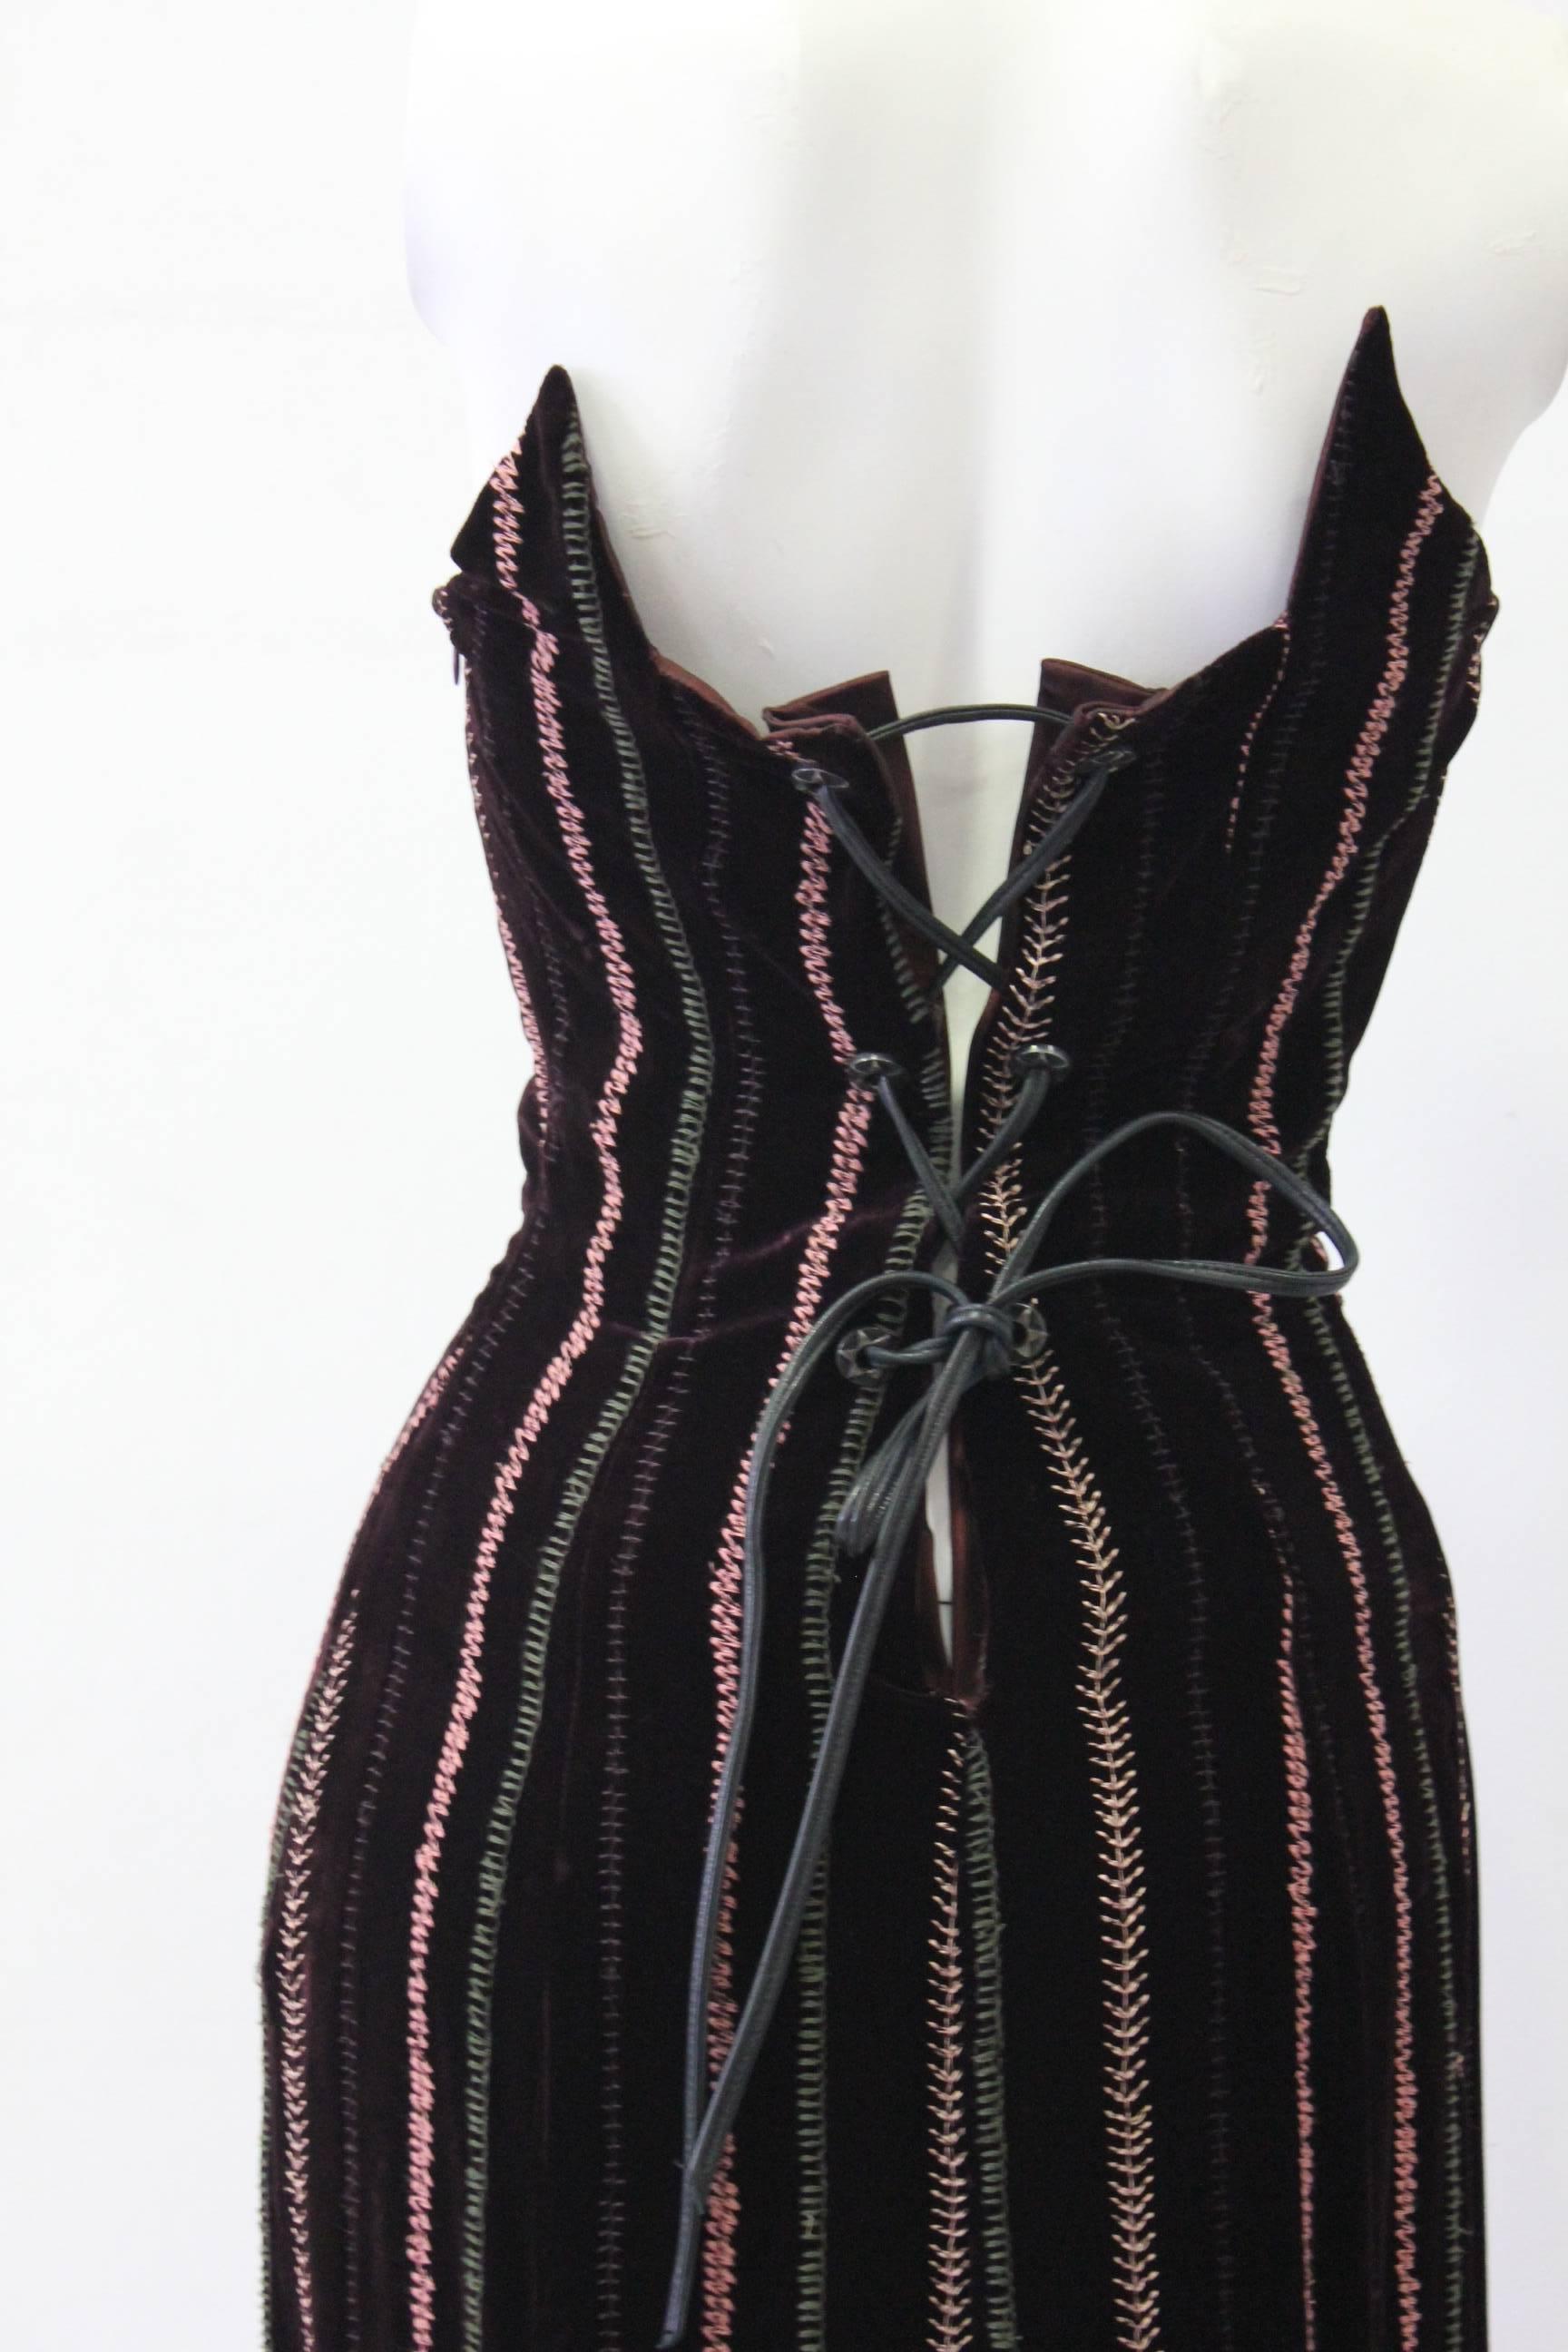 Gianfranco Ferre Silk Velvet Evening Gown 1990s For Sale 1